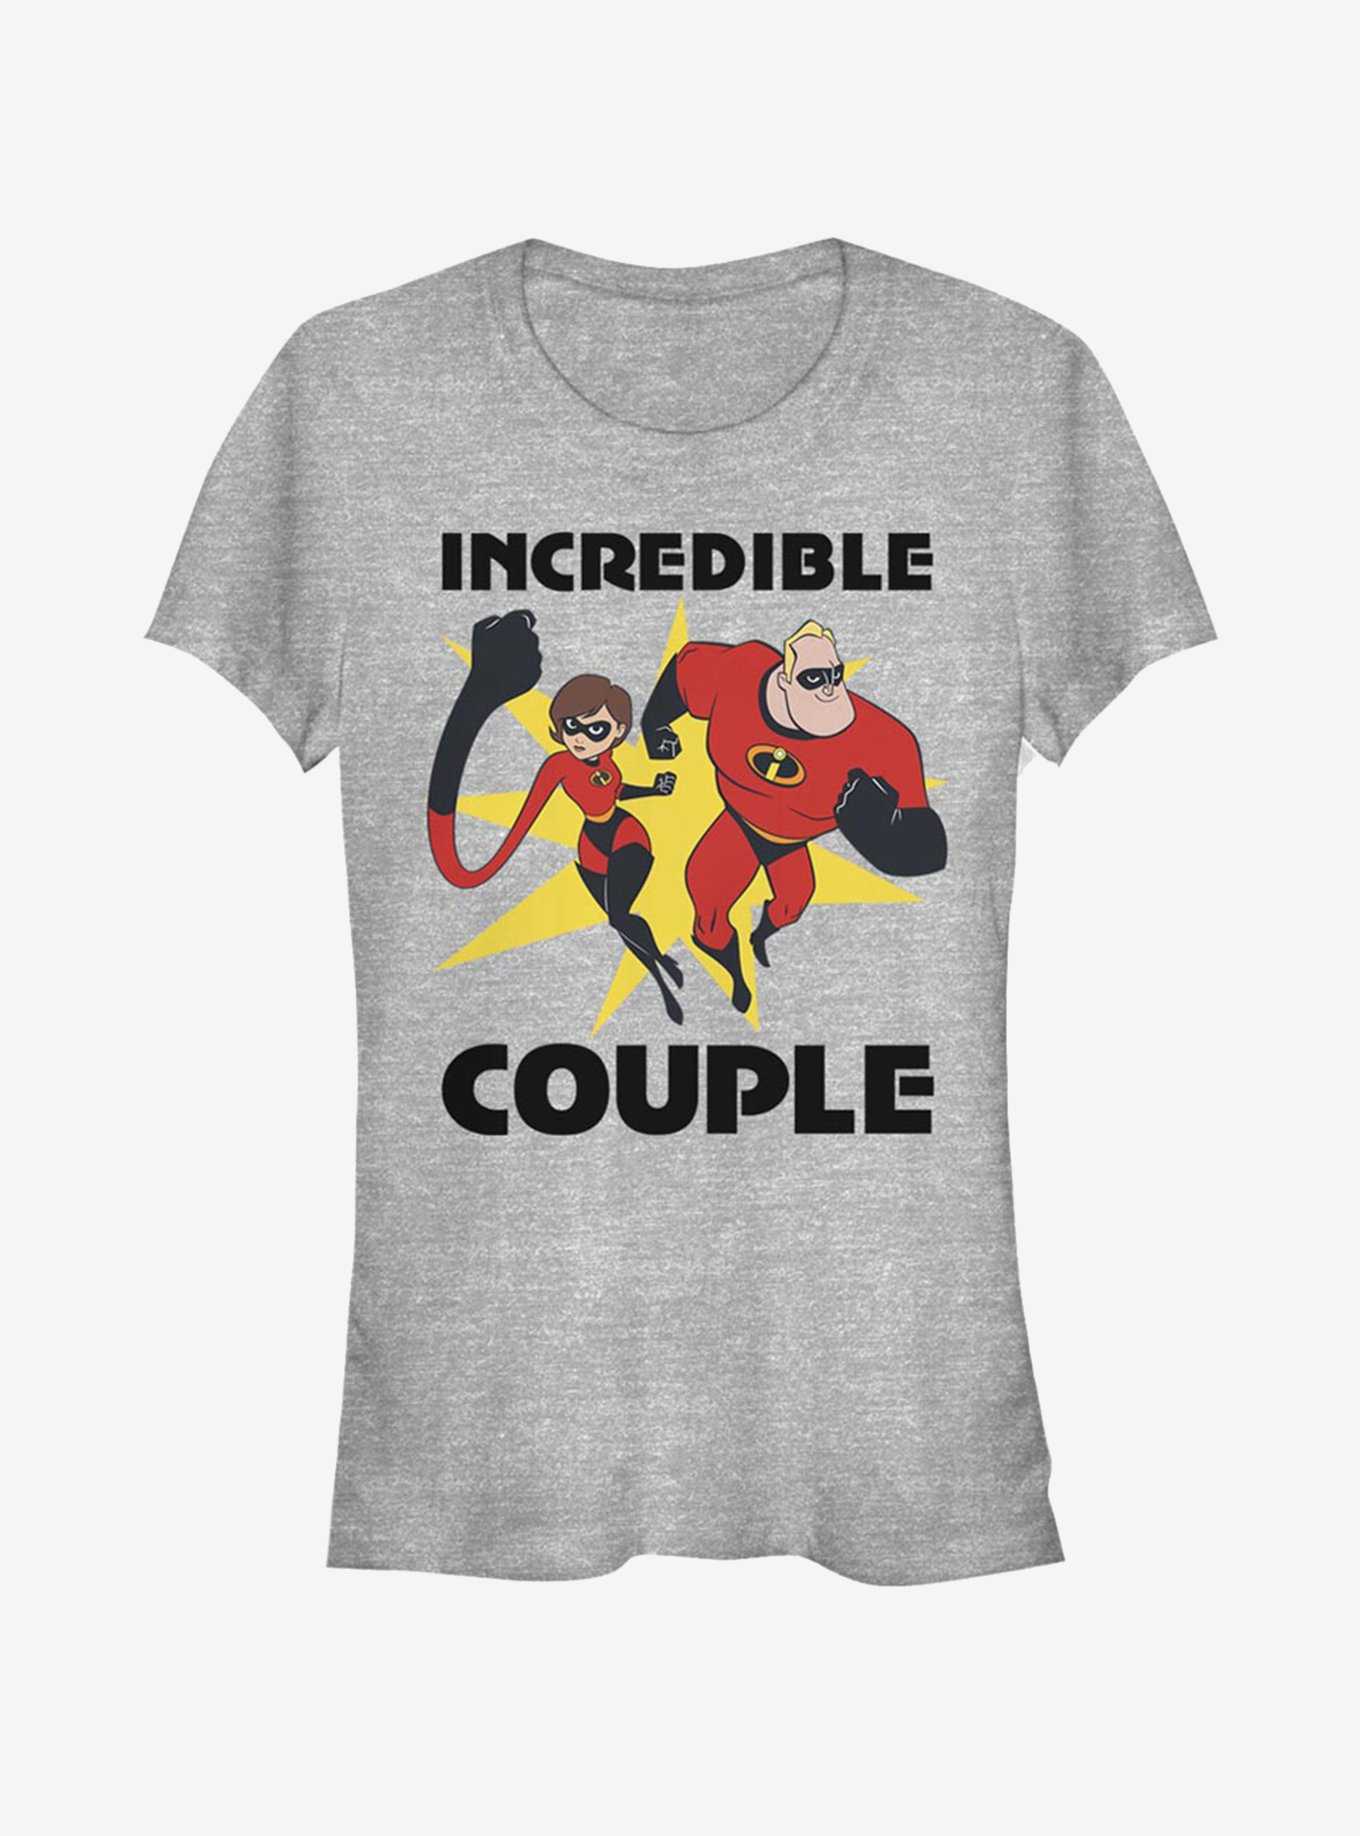 Disney Pixar The Incredibles Incredible Couple Girls T-Shirt, , hi-res